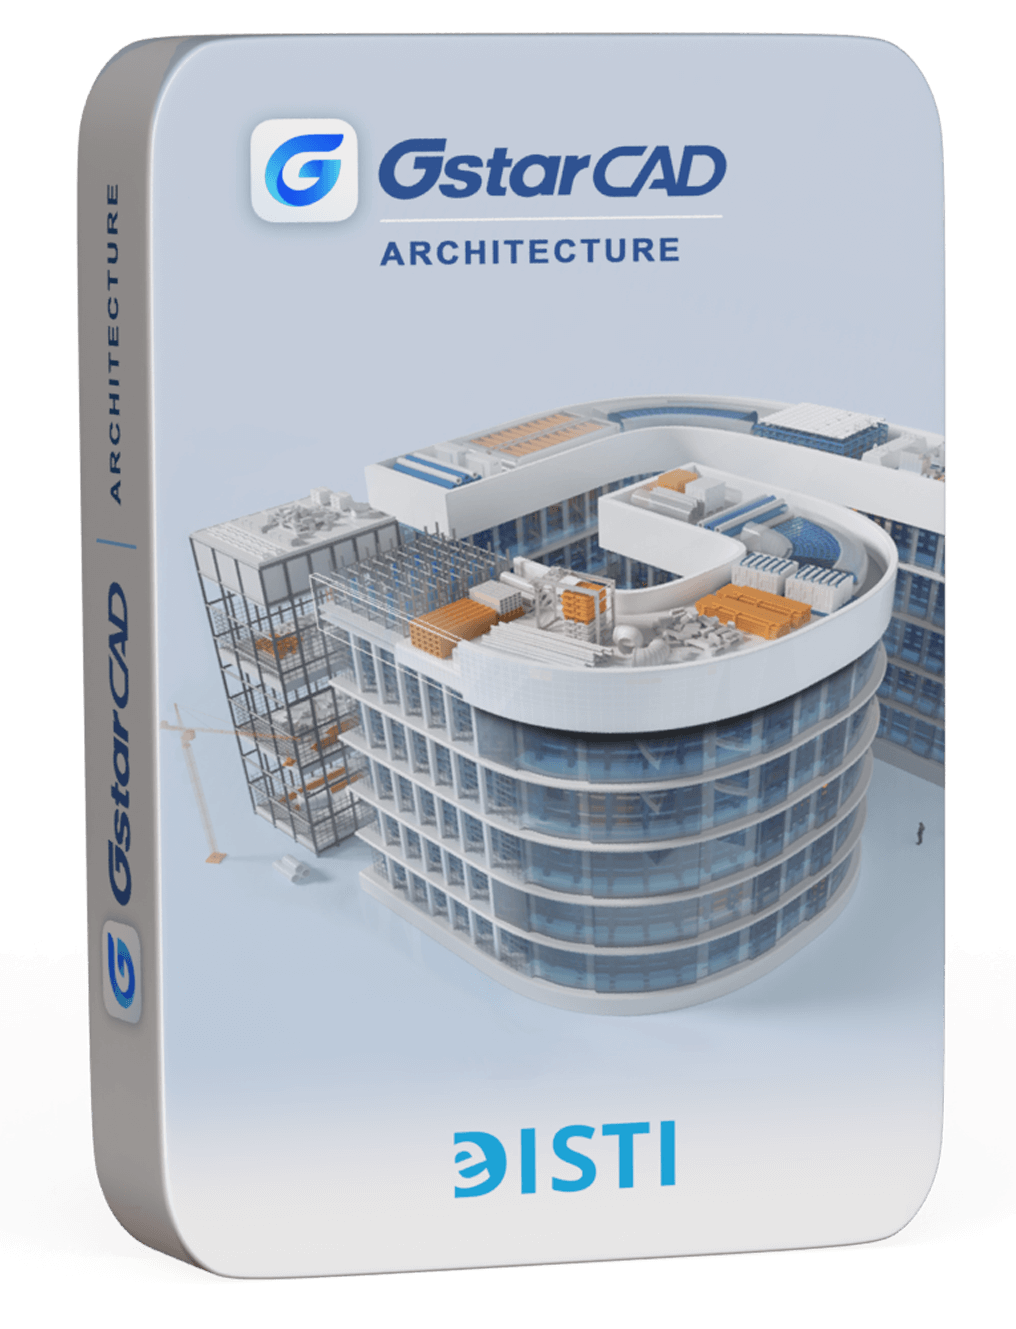 GstarCAD Architecture